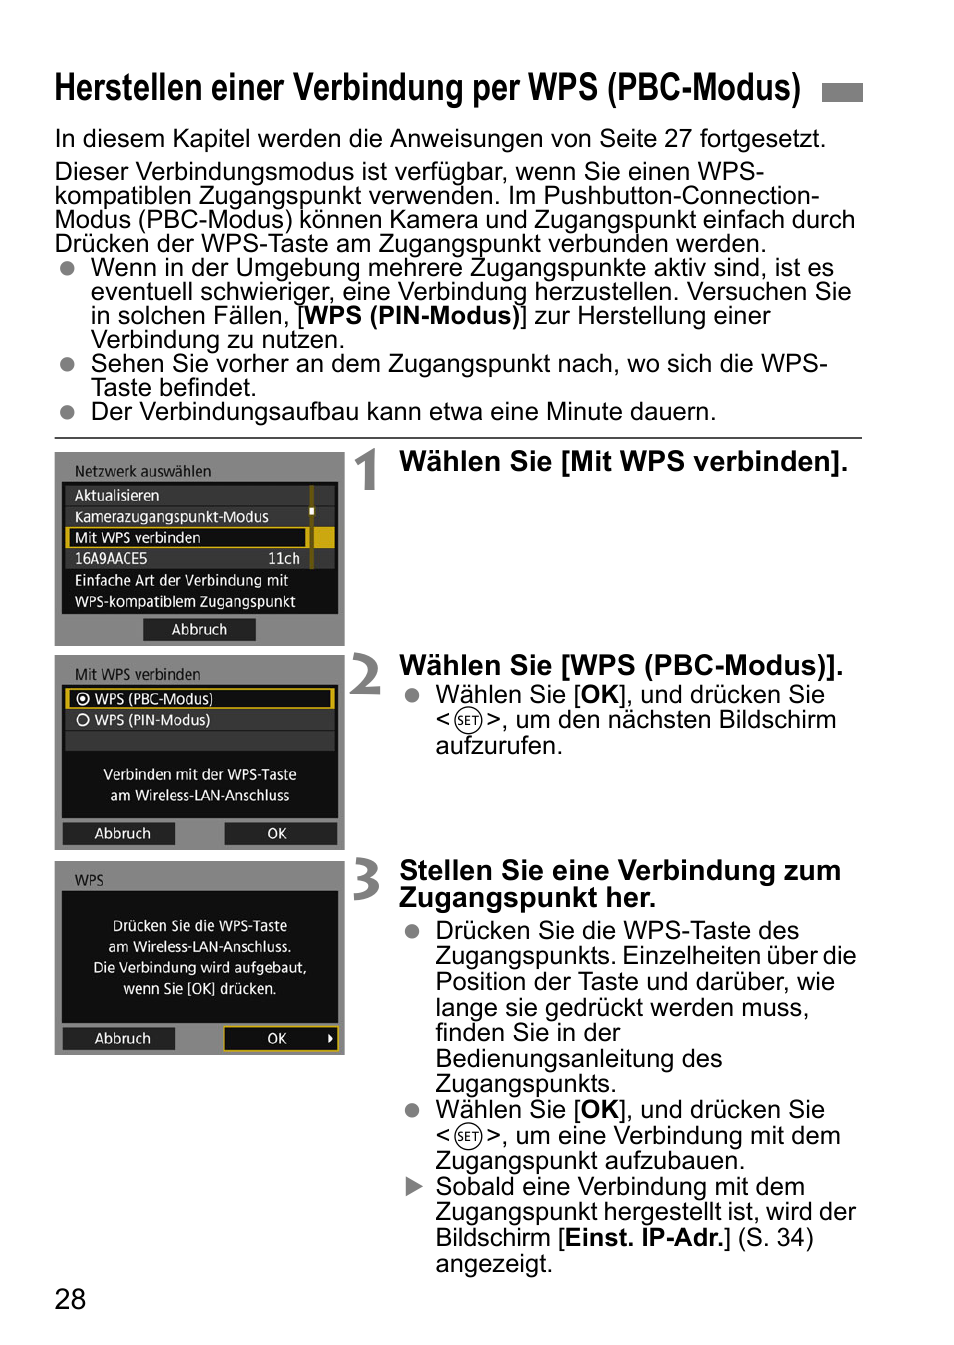 Herstellen einer verbindung per wps (pbc-modus), 28 beschr | Canon EOS 1D X Mark II Benutzerhandbuch | Seite 28 / 152